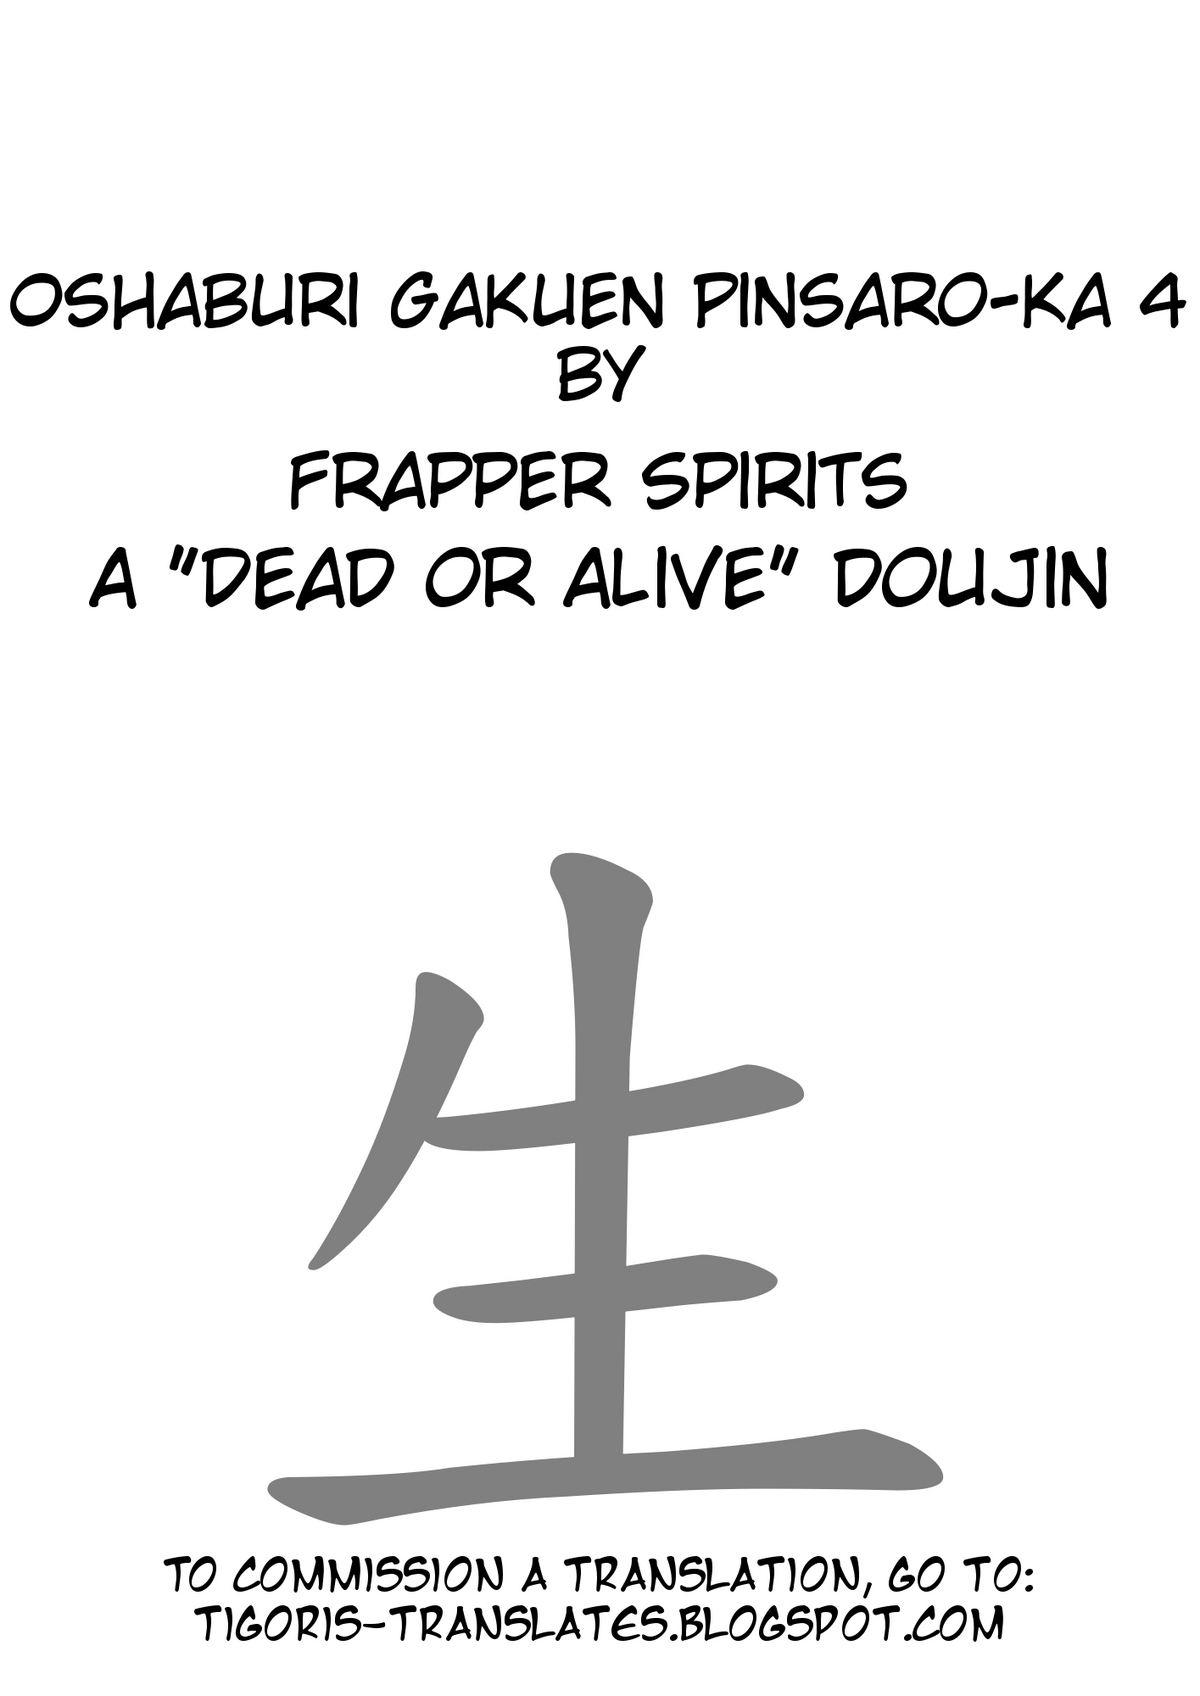 Deep Oshaburi Gakuen PinSalo-ka 4 - Dead or alive Youporn - Page 2